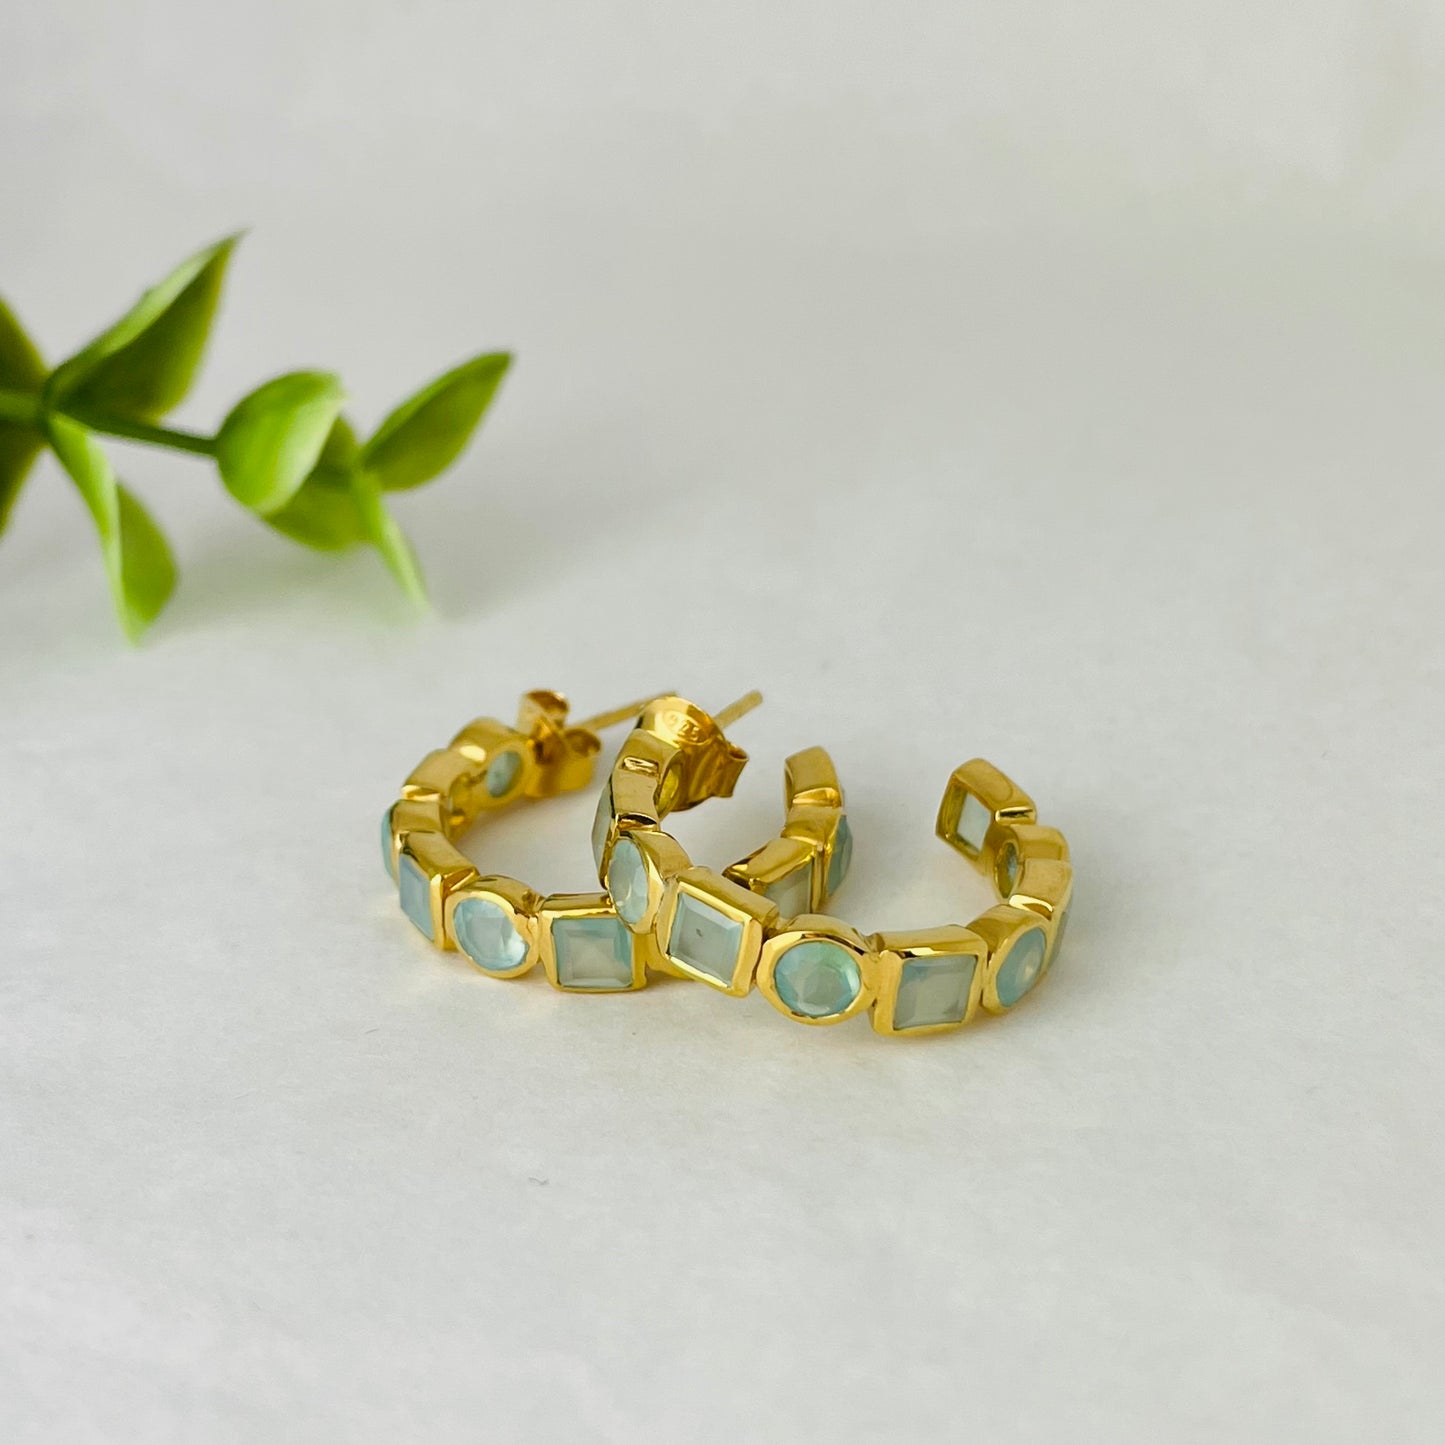 Treisi Jewelry 24K Gold Vermeil Geo Hoops Earrings - Multiple Stones